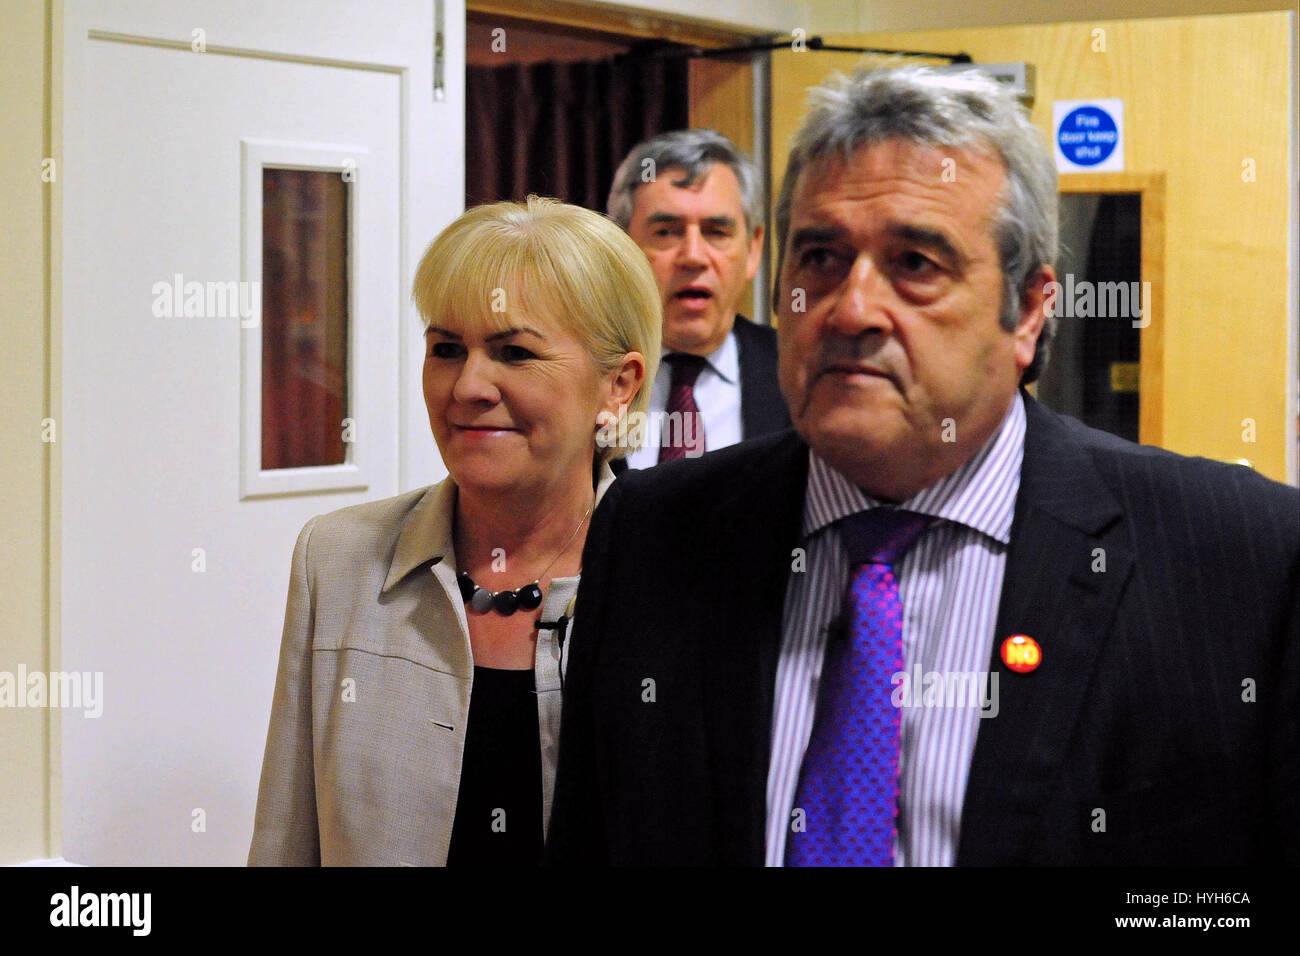 Leader travailliste écossais Johann Lamont arrive avec Midlothian MP David Hamilton (R) et de l'ancien premier ministre Gordon Brown (C) pour répondre à un référendum écossais rassemblement à Loanhead Banque D'Images